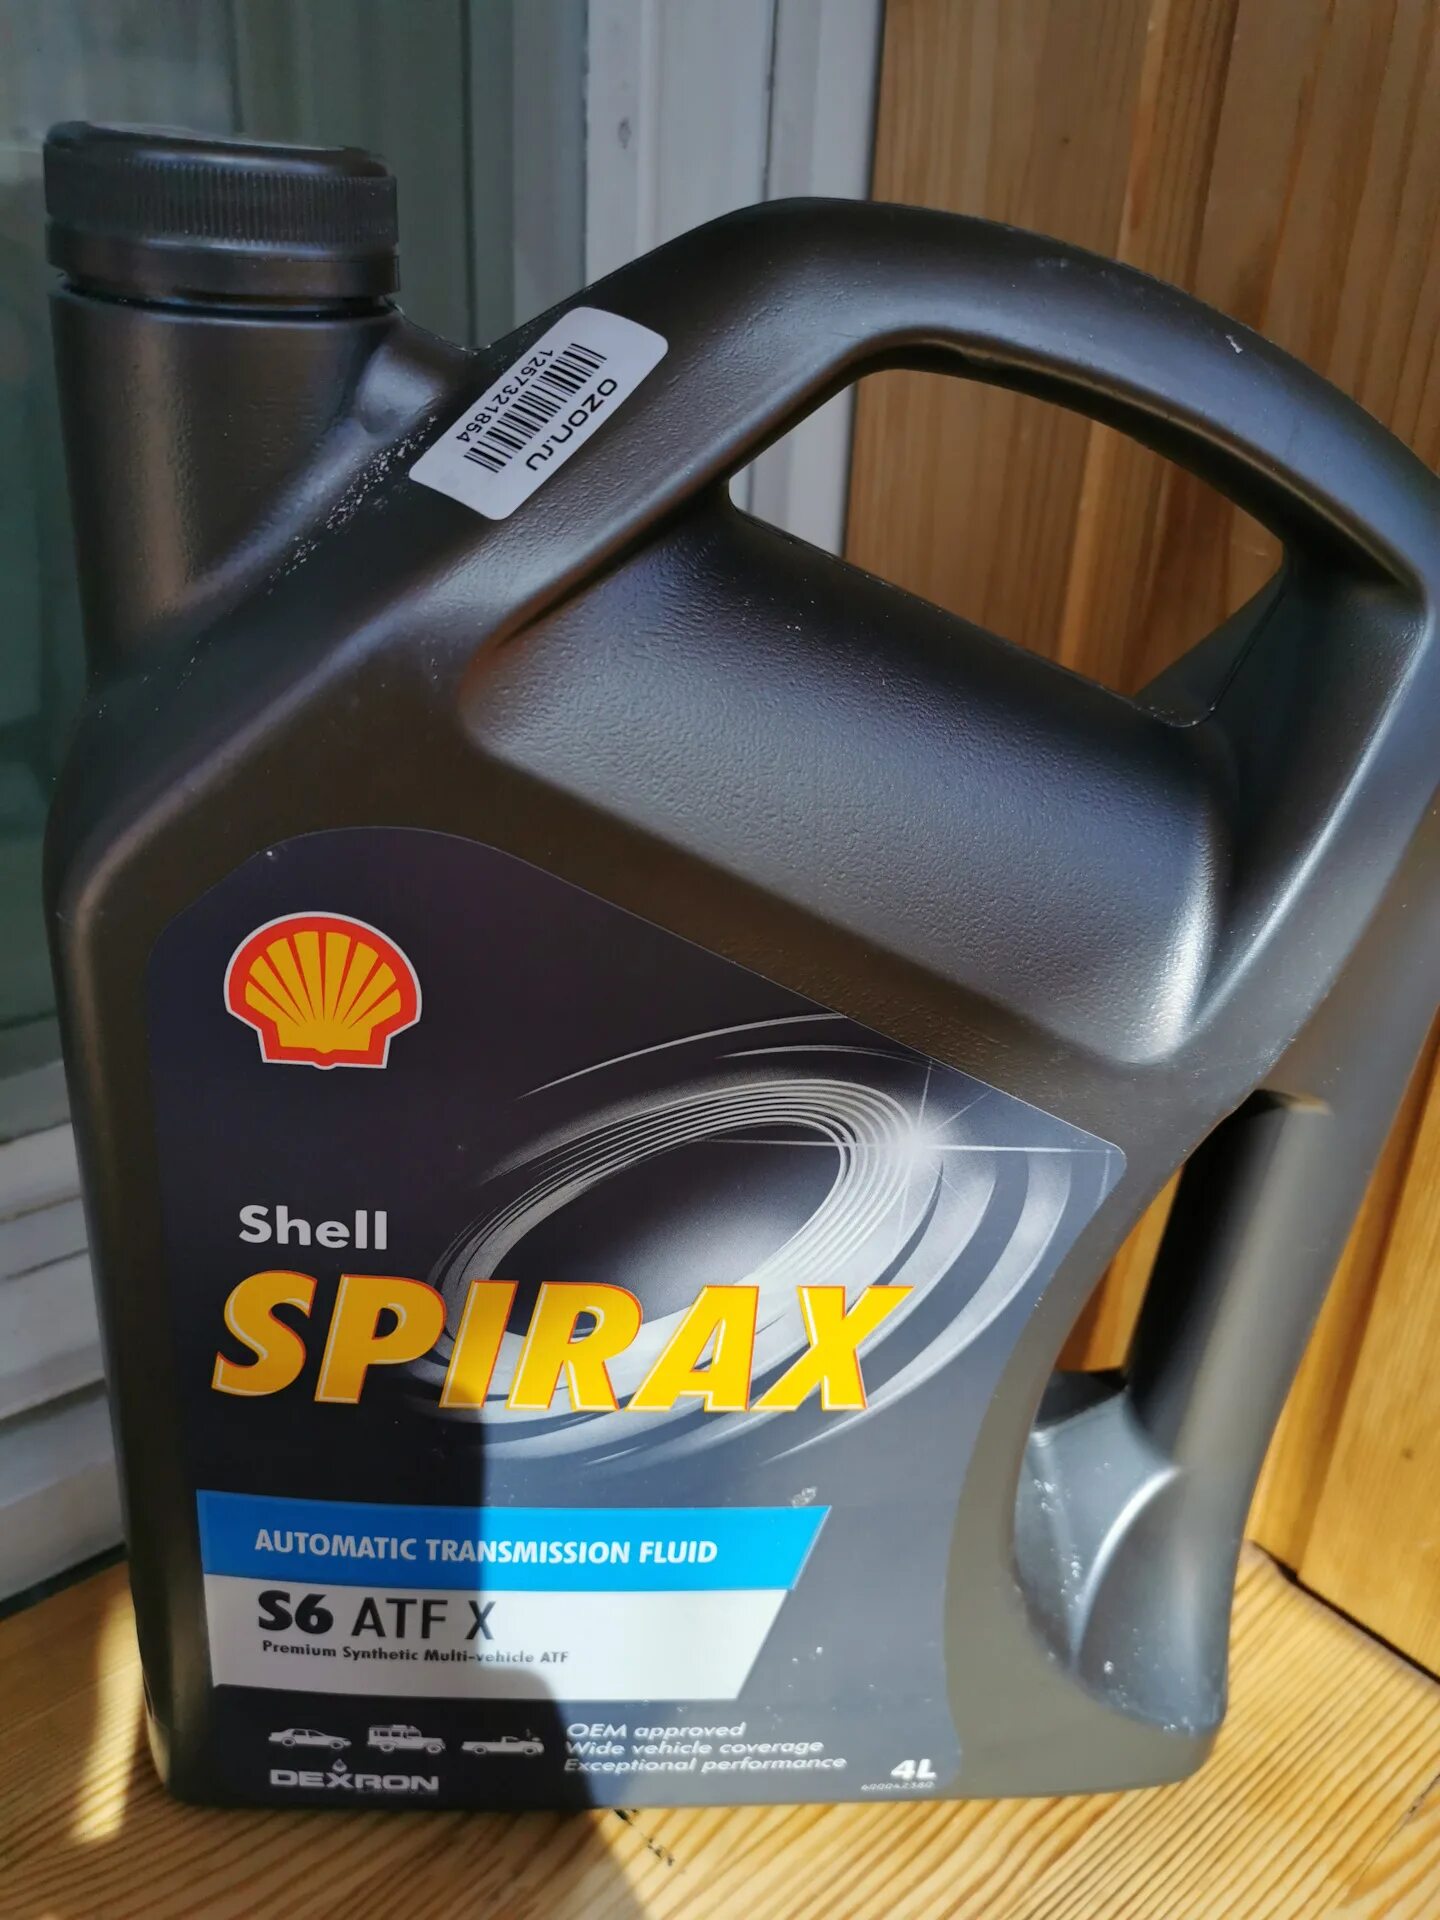 Shell spirax atf x. Shell Spirax s6 ATF X. Shell Spirax s6 ATF X 4 допуски. Shell Spirax s6 ATF X 550046519 масло трансмиссионное Shell Spirax s6 ATF X 1 Л 550046519. АТФ s6 ZM Шелл.